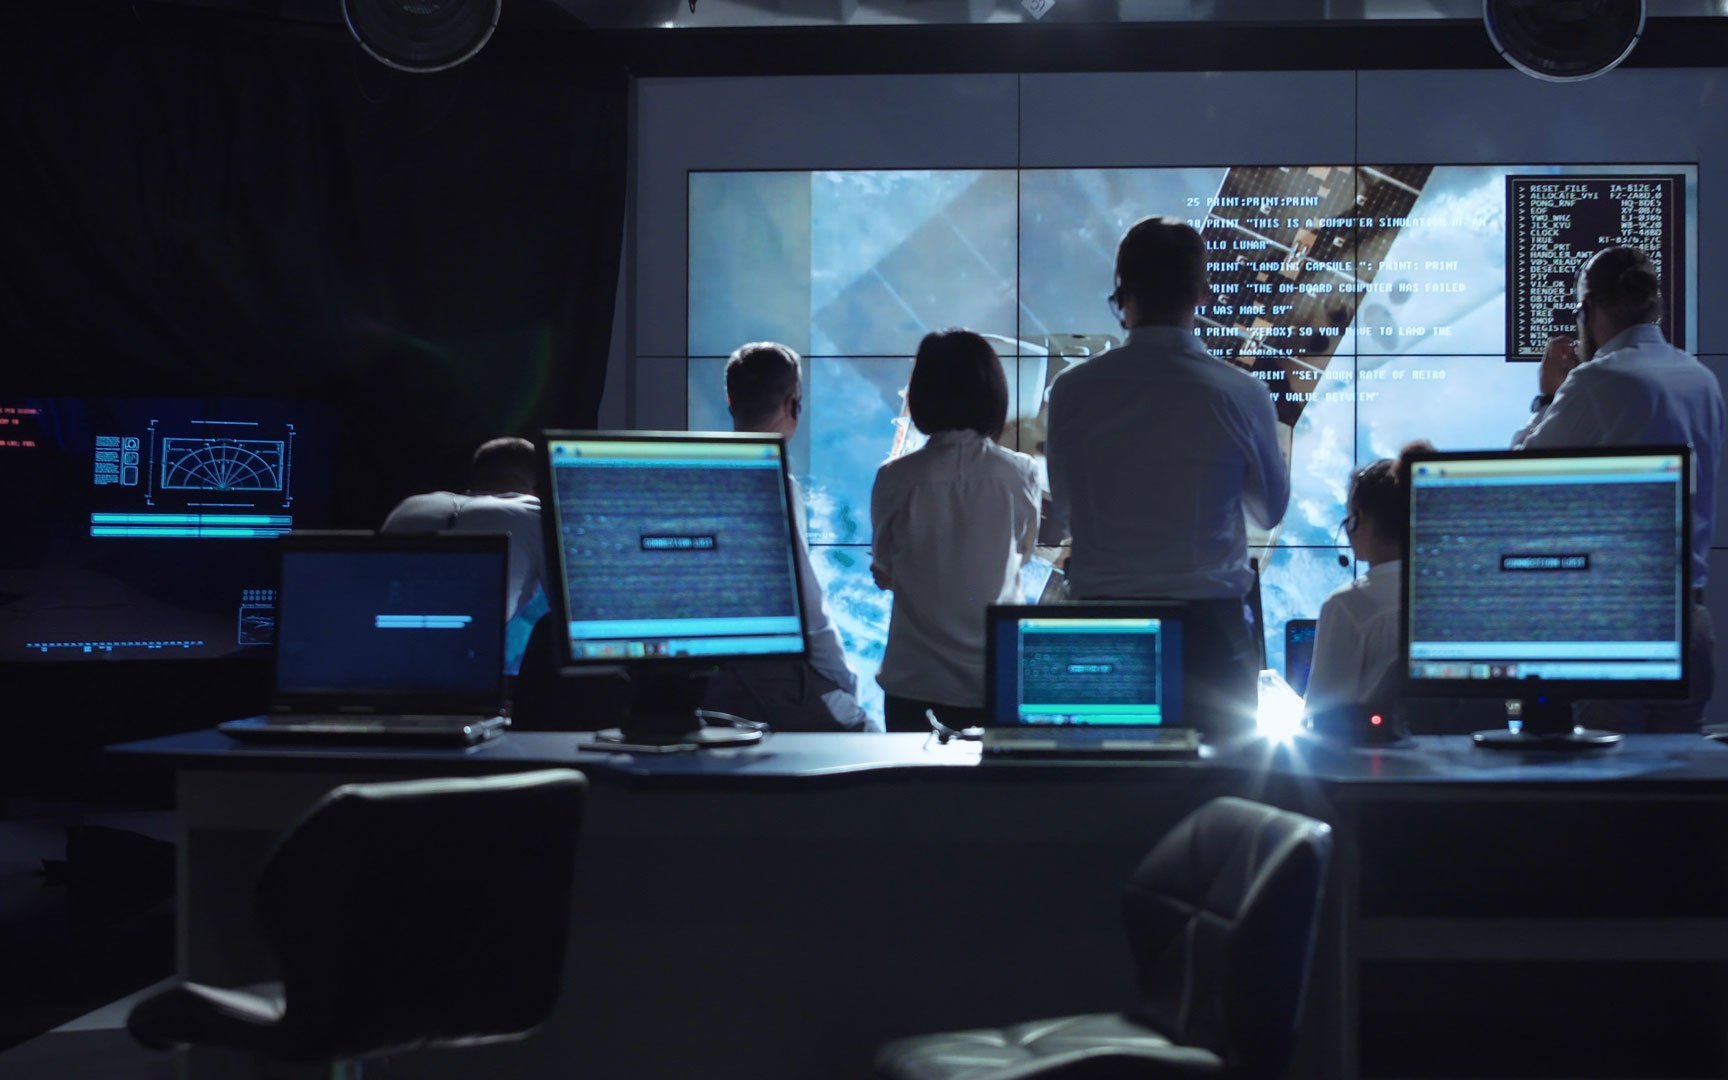 Zu sehen ist das Missionskontrollzentrum der NASA, auf einem großen Bildschirm verfolgen mehrere Menschen zwischen Computerbildschirmen eine Weltraummission.